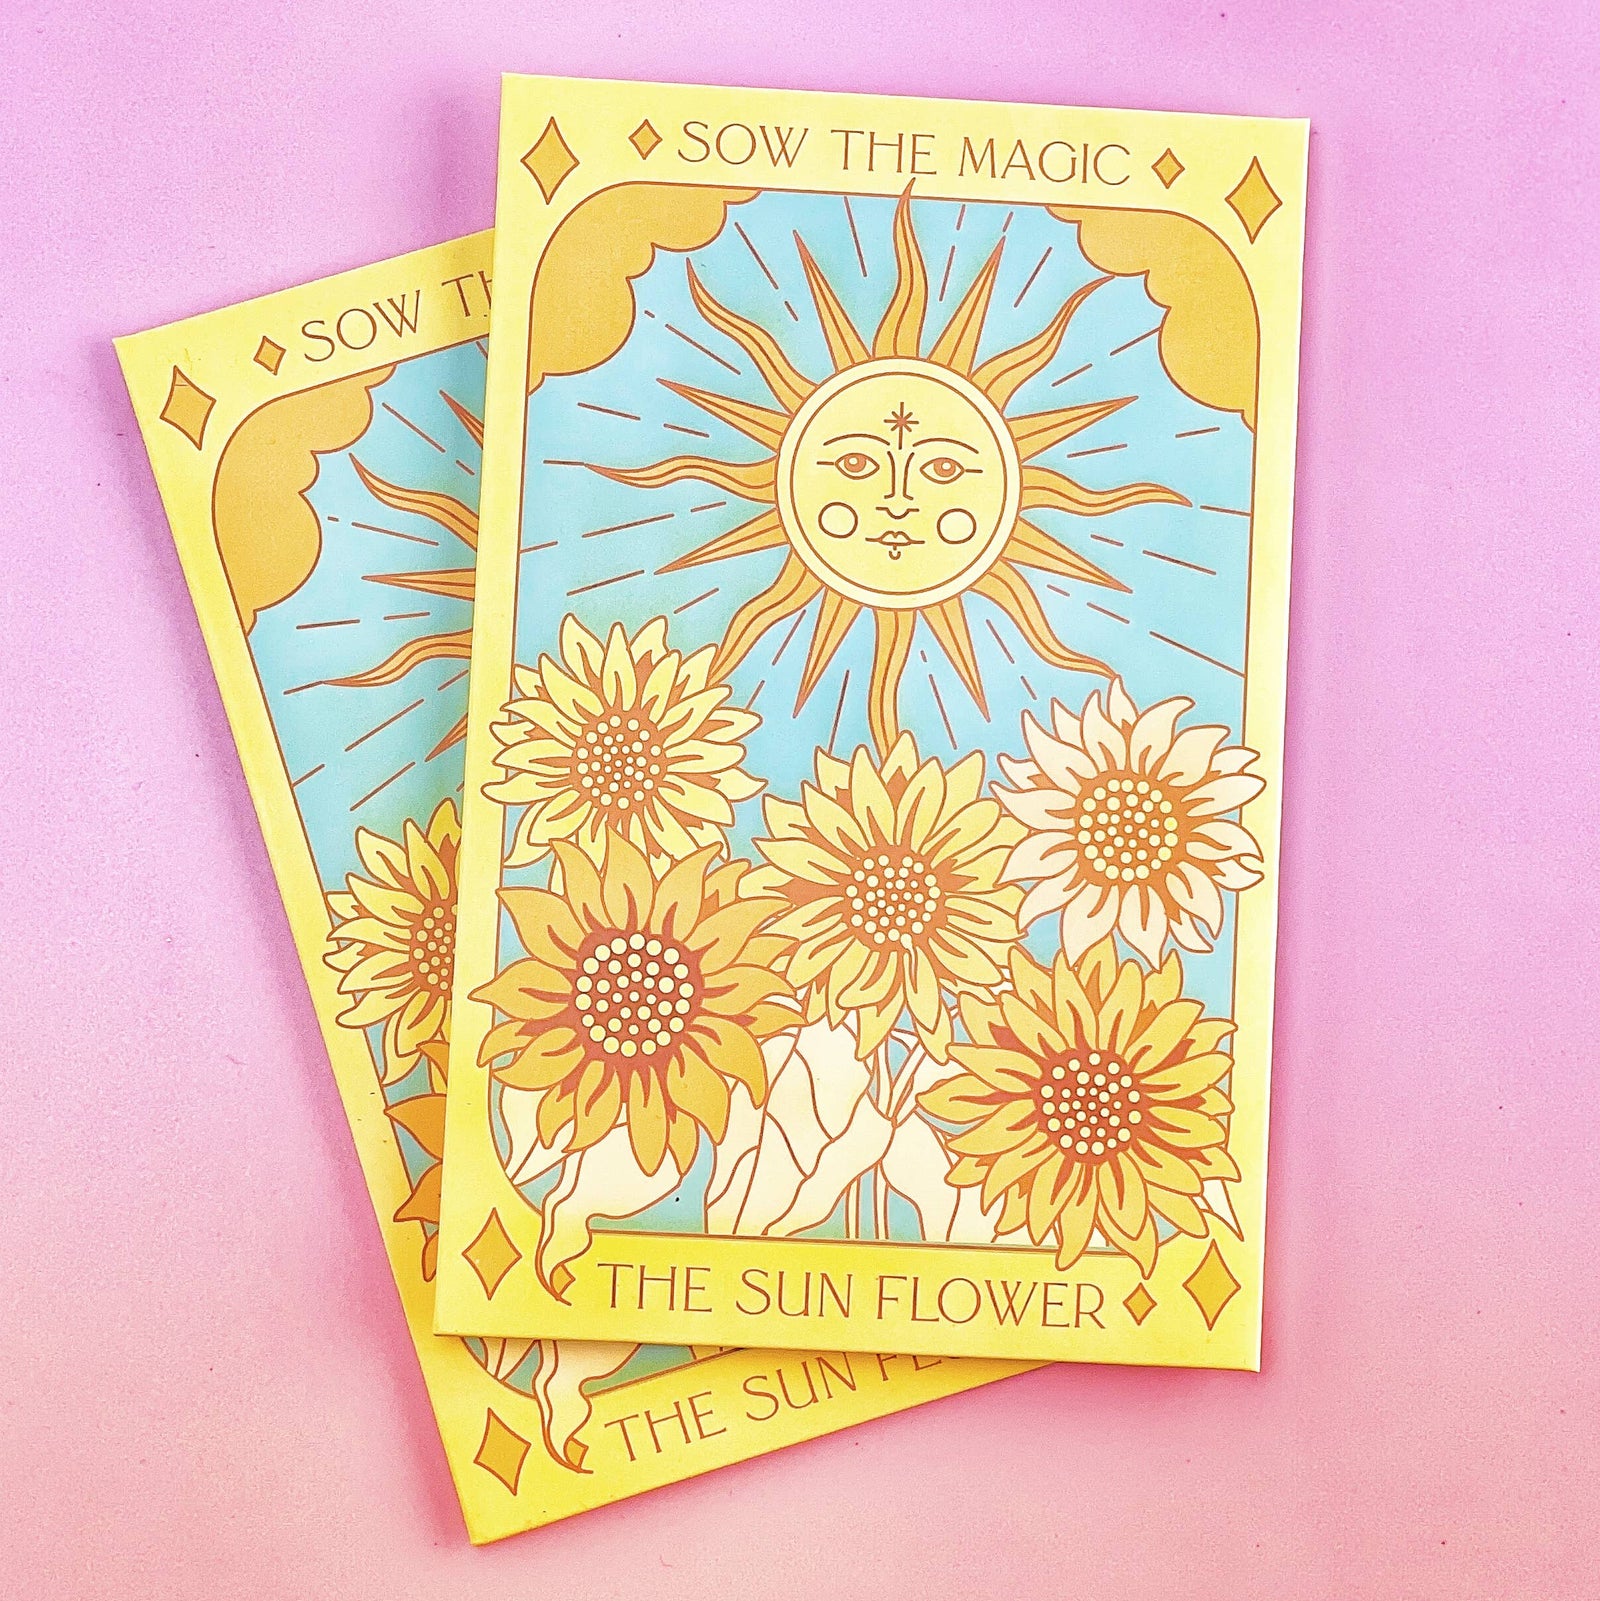 The Sunflower (Ring of Fire) Tarot Garden Seed Packet